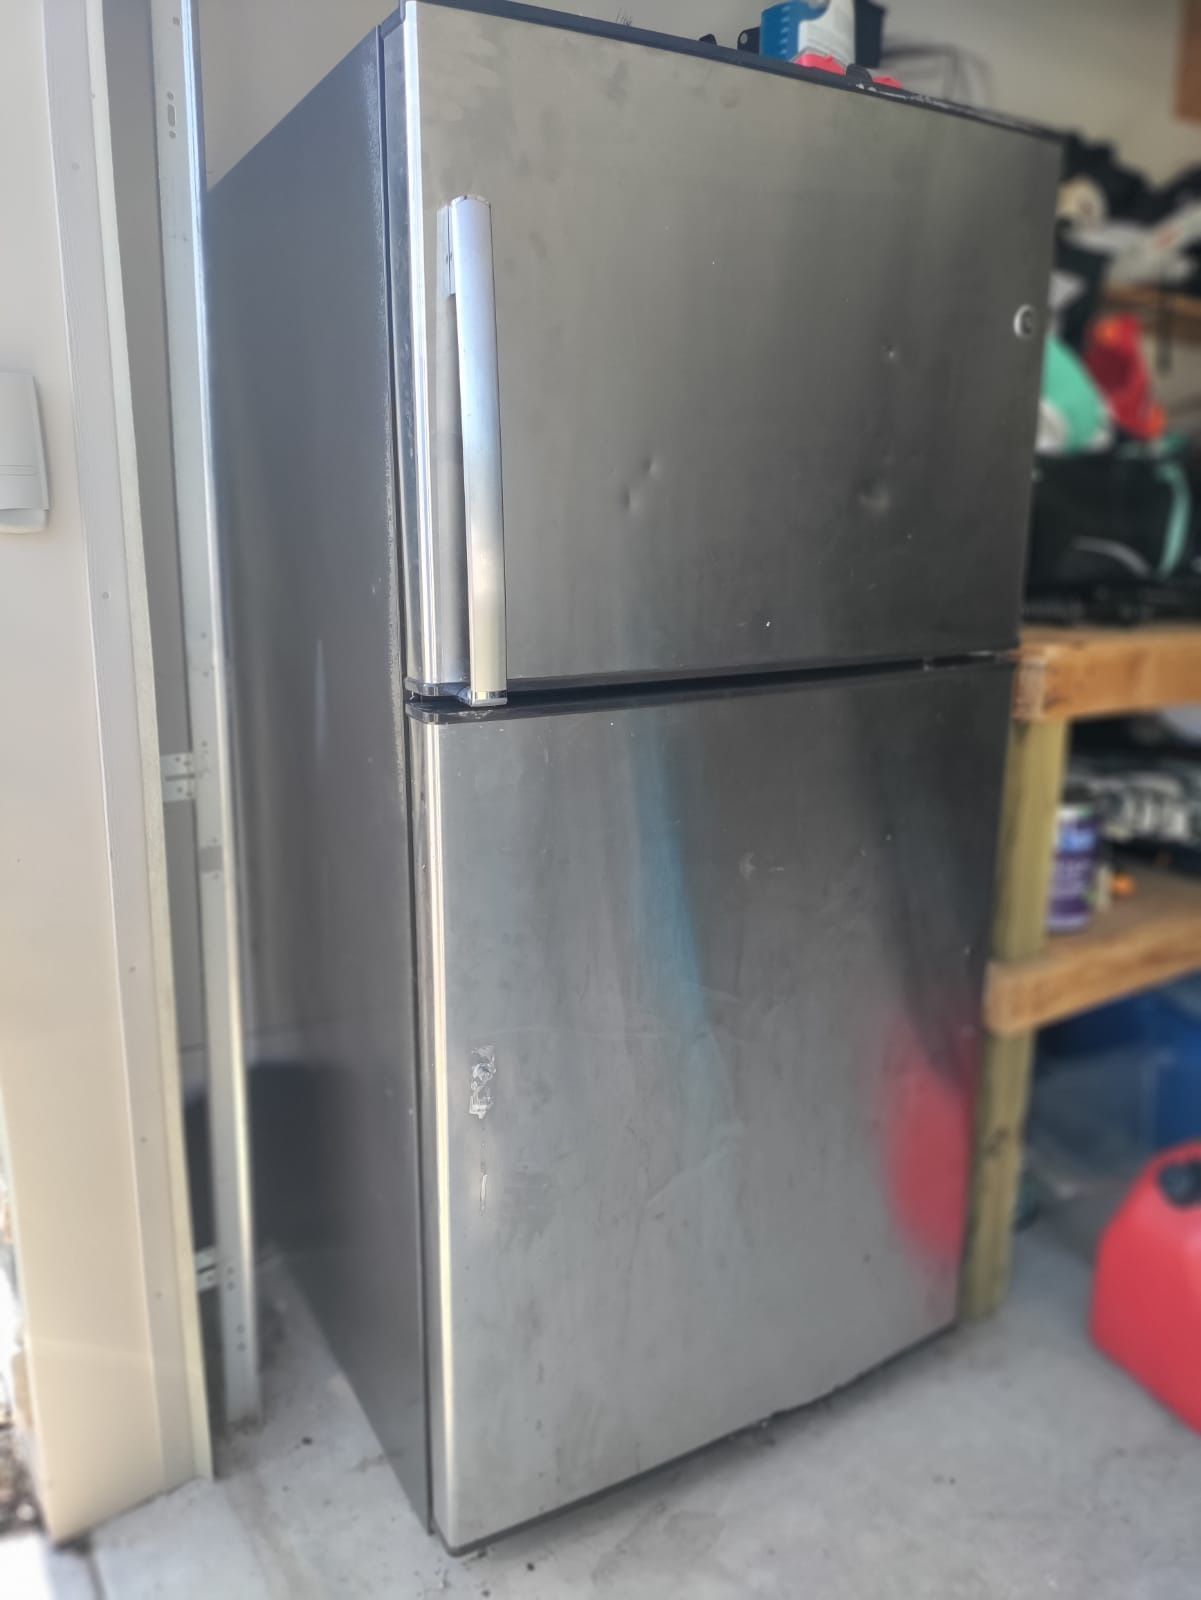  Refrigerator 